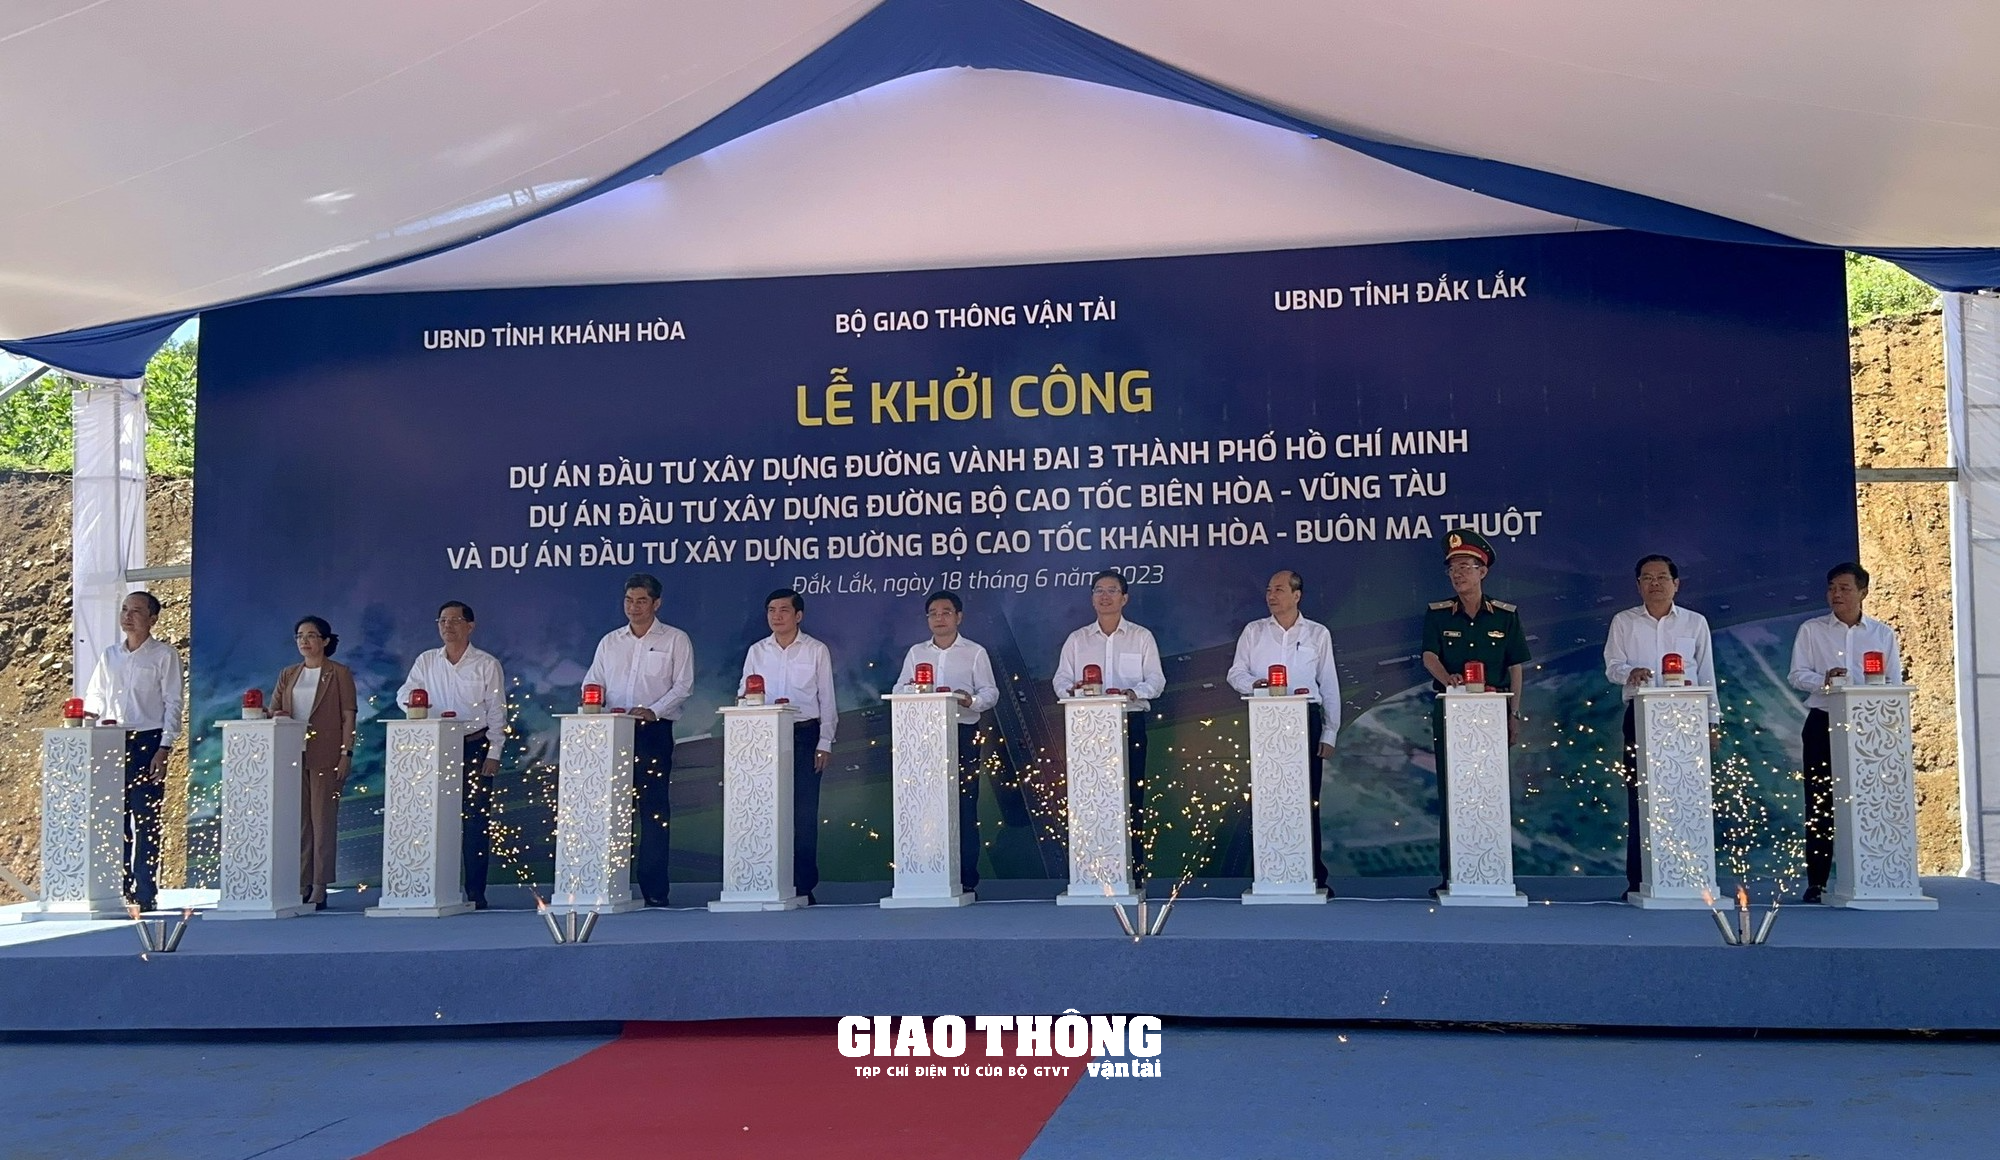 Khởi công dự án cao tốc Khánh Hòa - Buôn Ma Thuột - Ảnh 1.